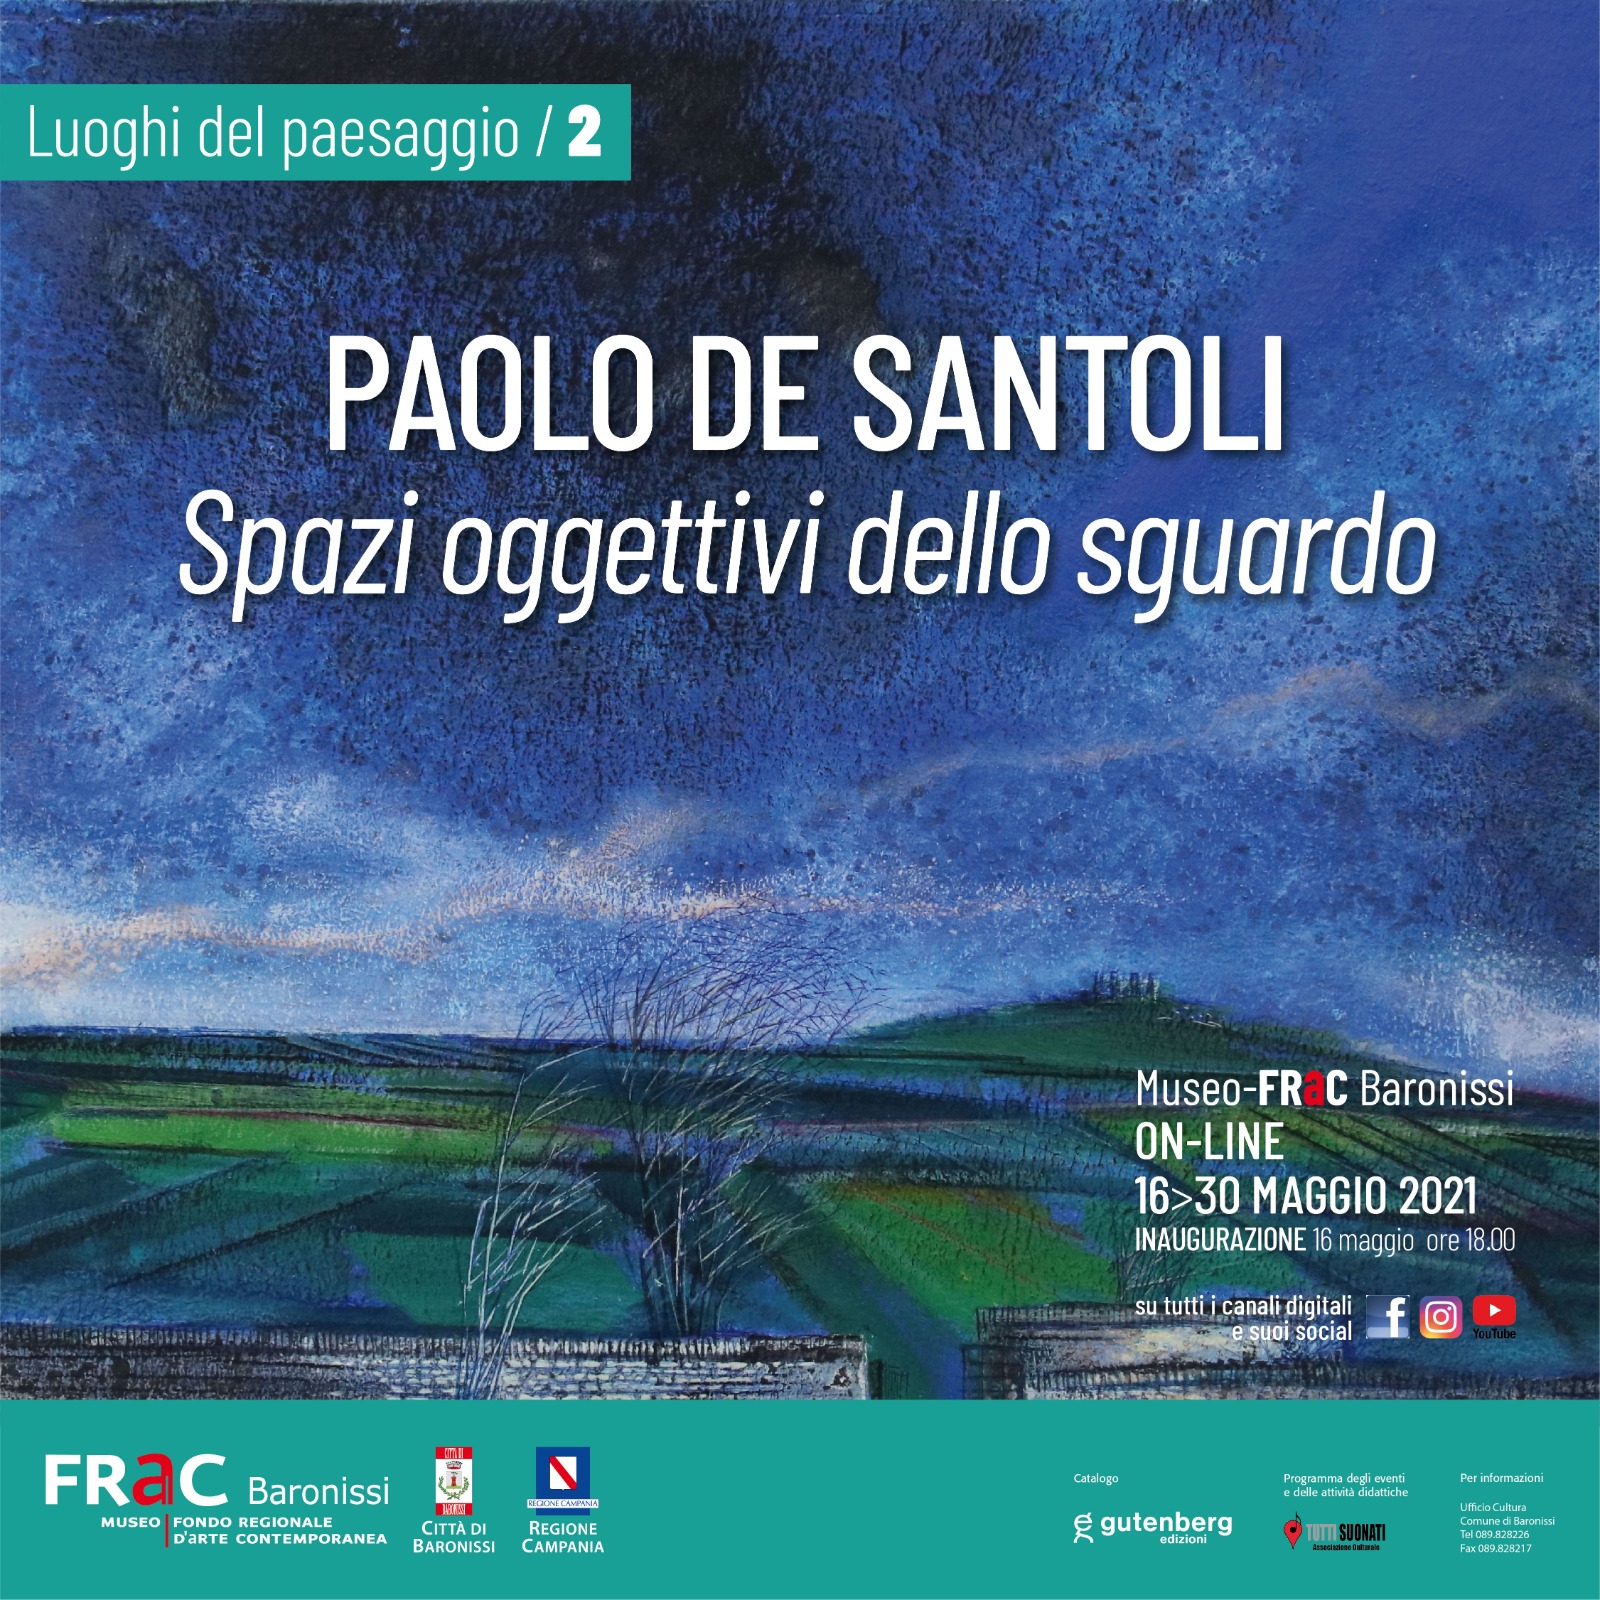 Paolo de Santoli Spazi oggettivi dello sguardo - www.87tv.it